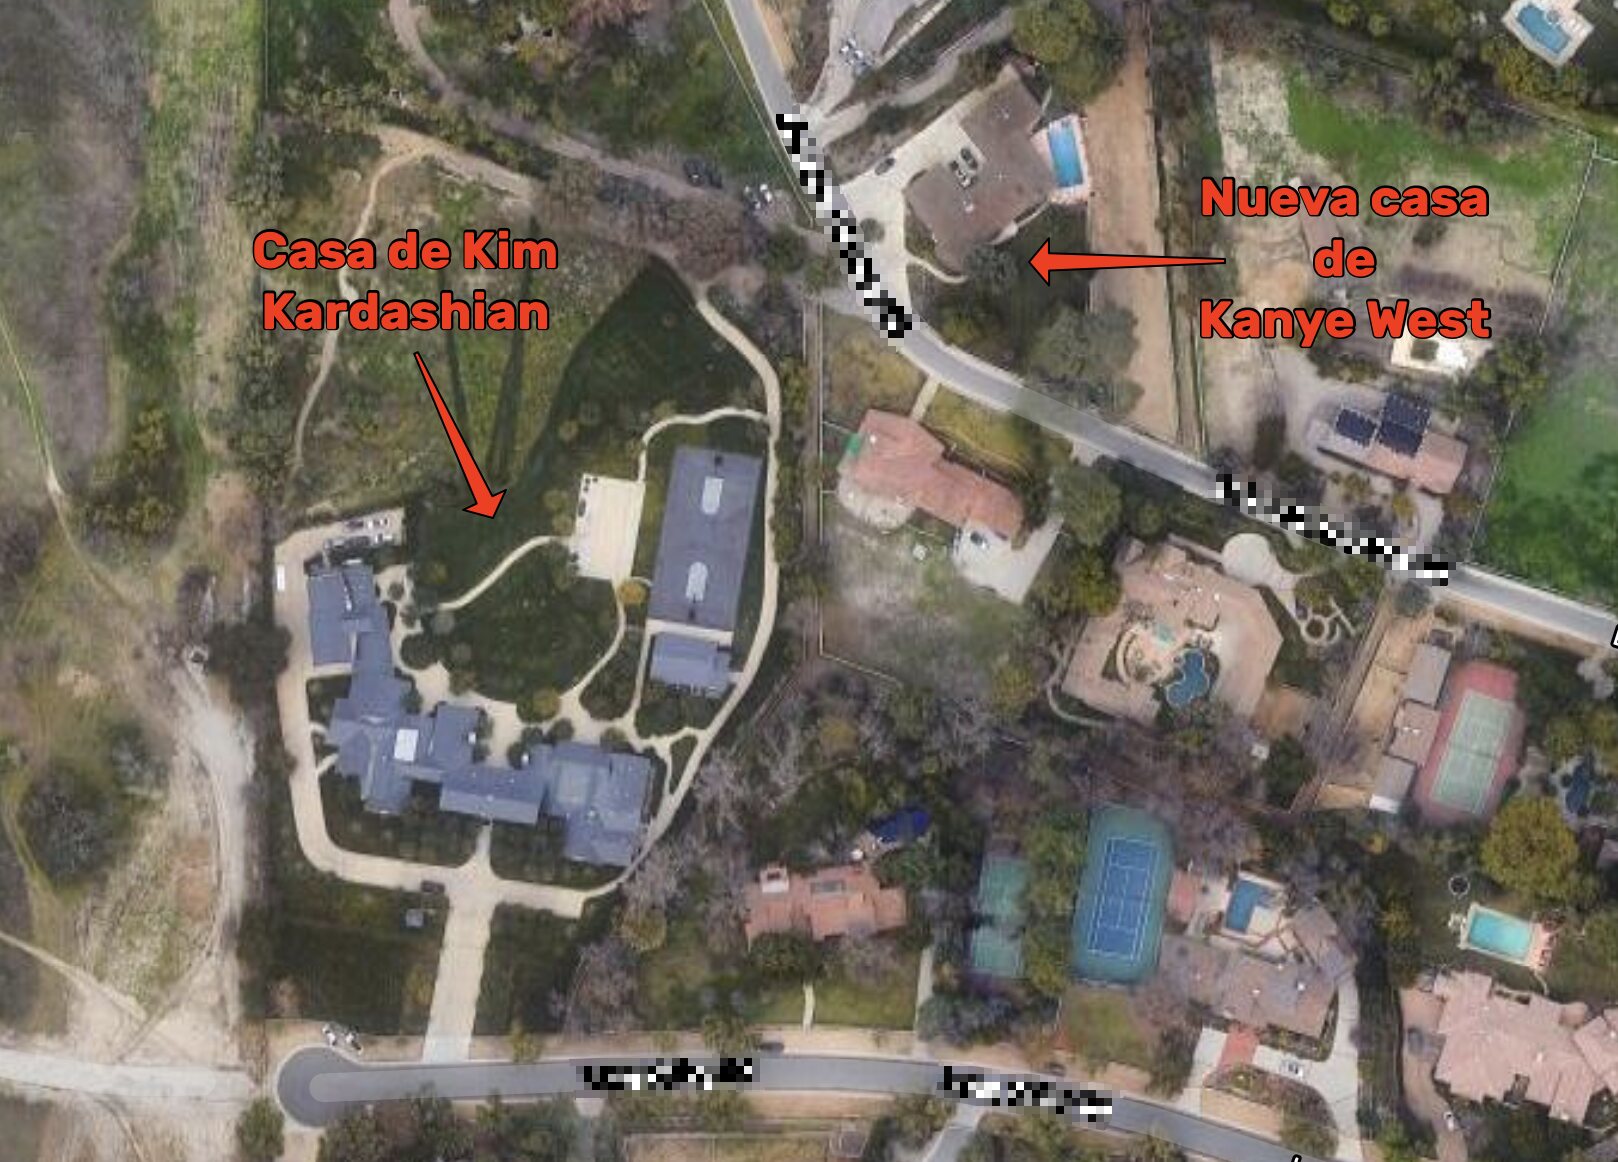 La nueva casa de Kanye West está a escasos metros de la de Kim Kardashian | Foto: Google Maps